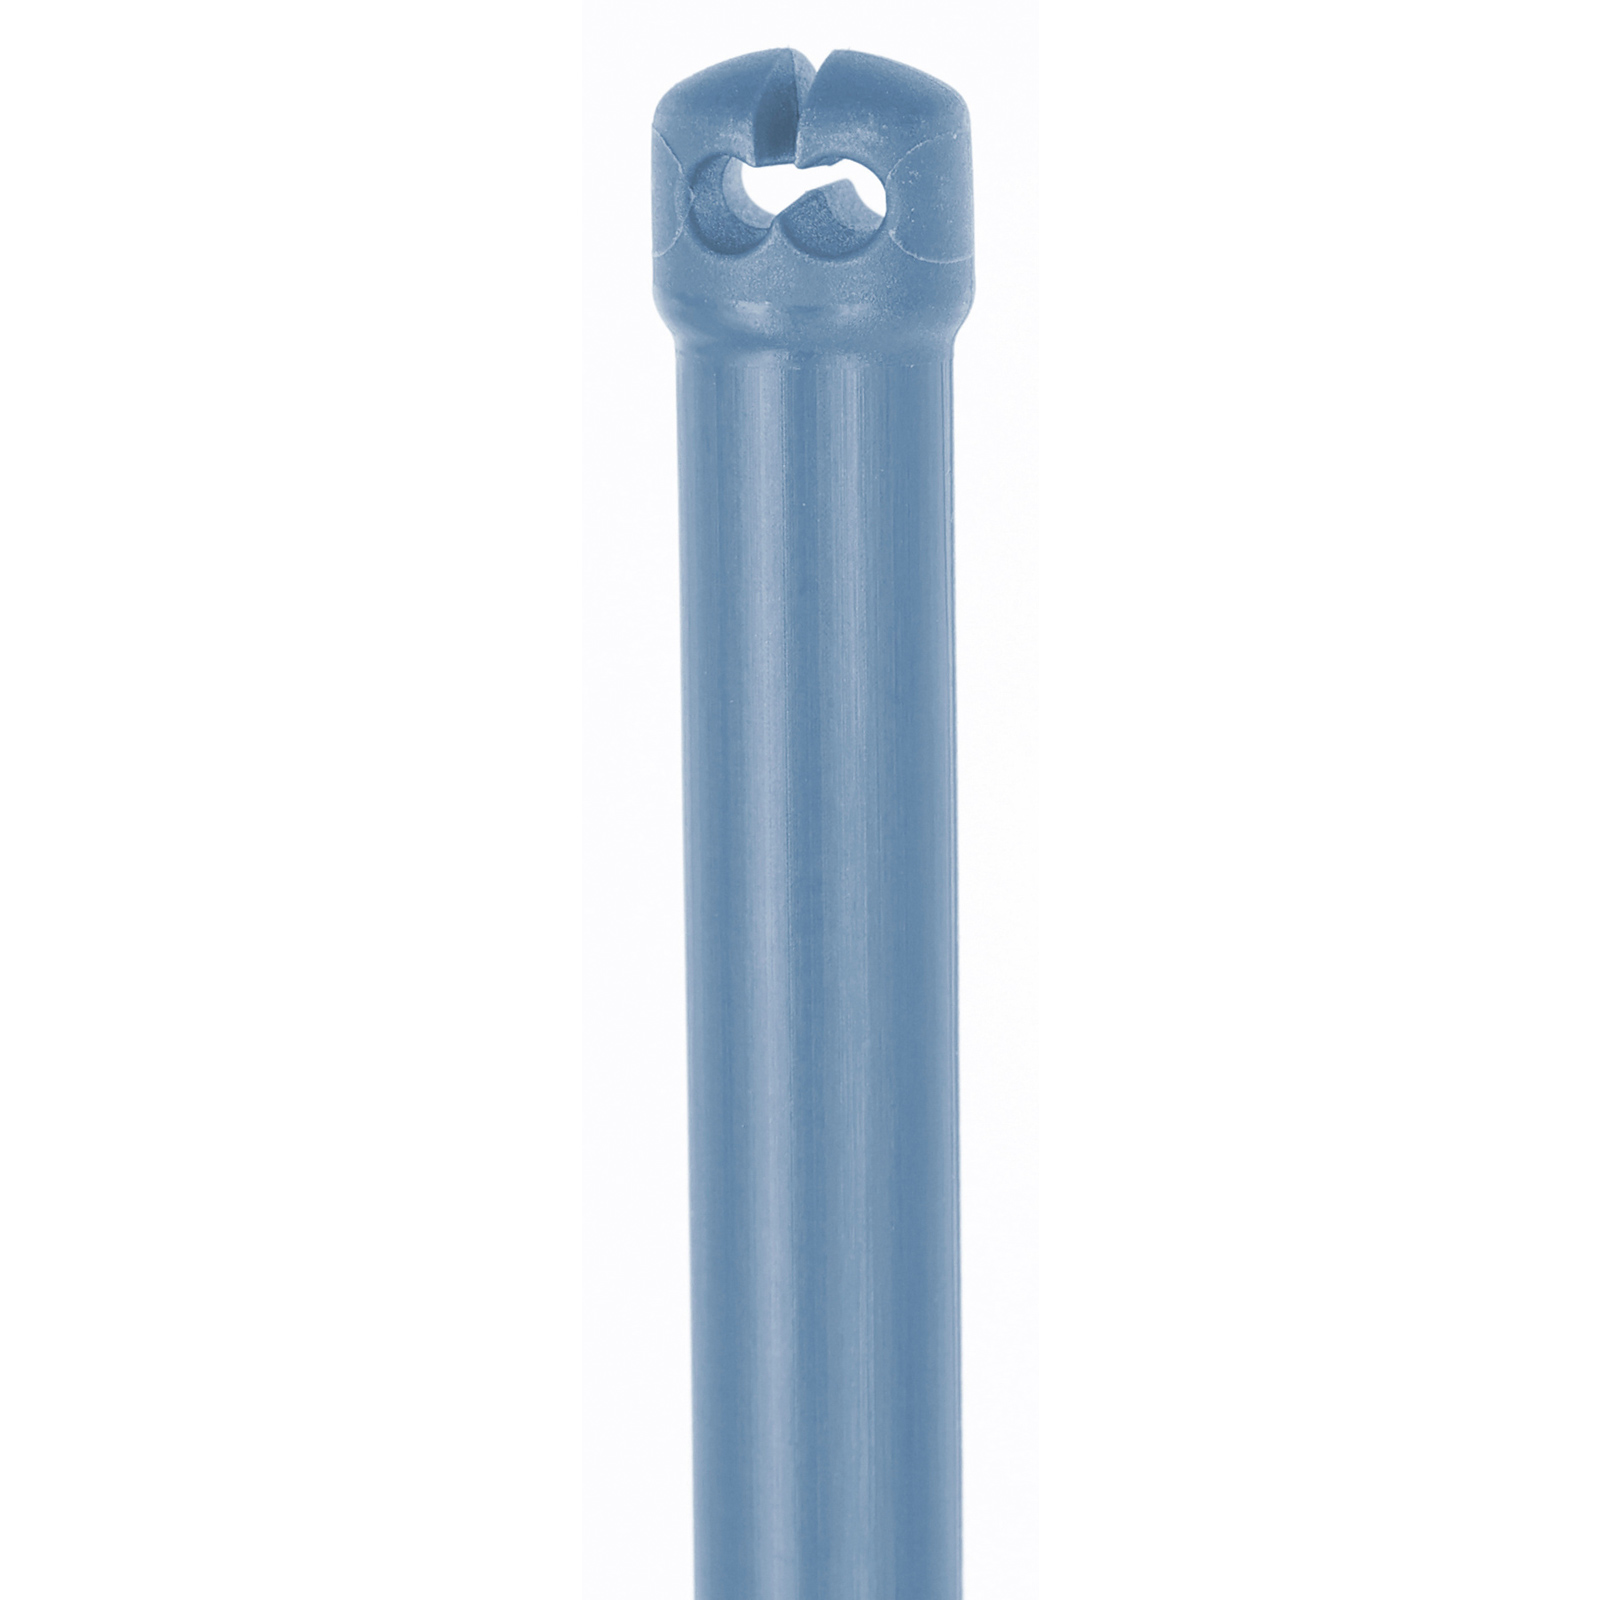 Prémium Thermoplast üvegszálas karó villanypásztor hálóhoz, dupla tüske, kék